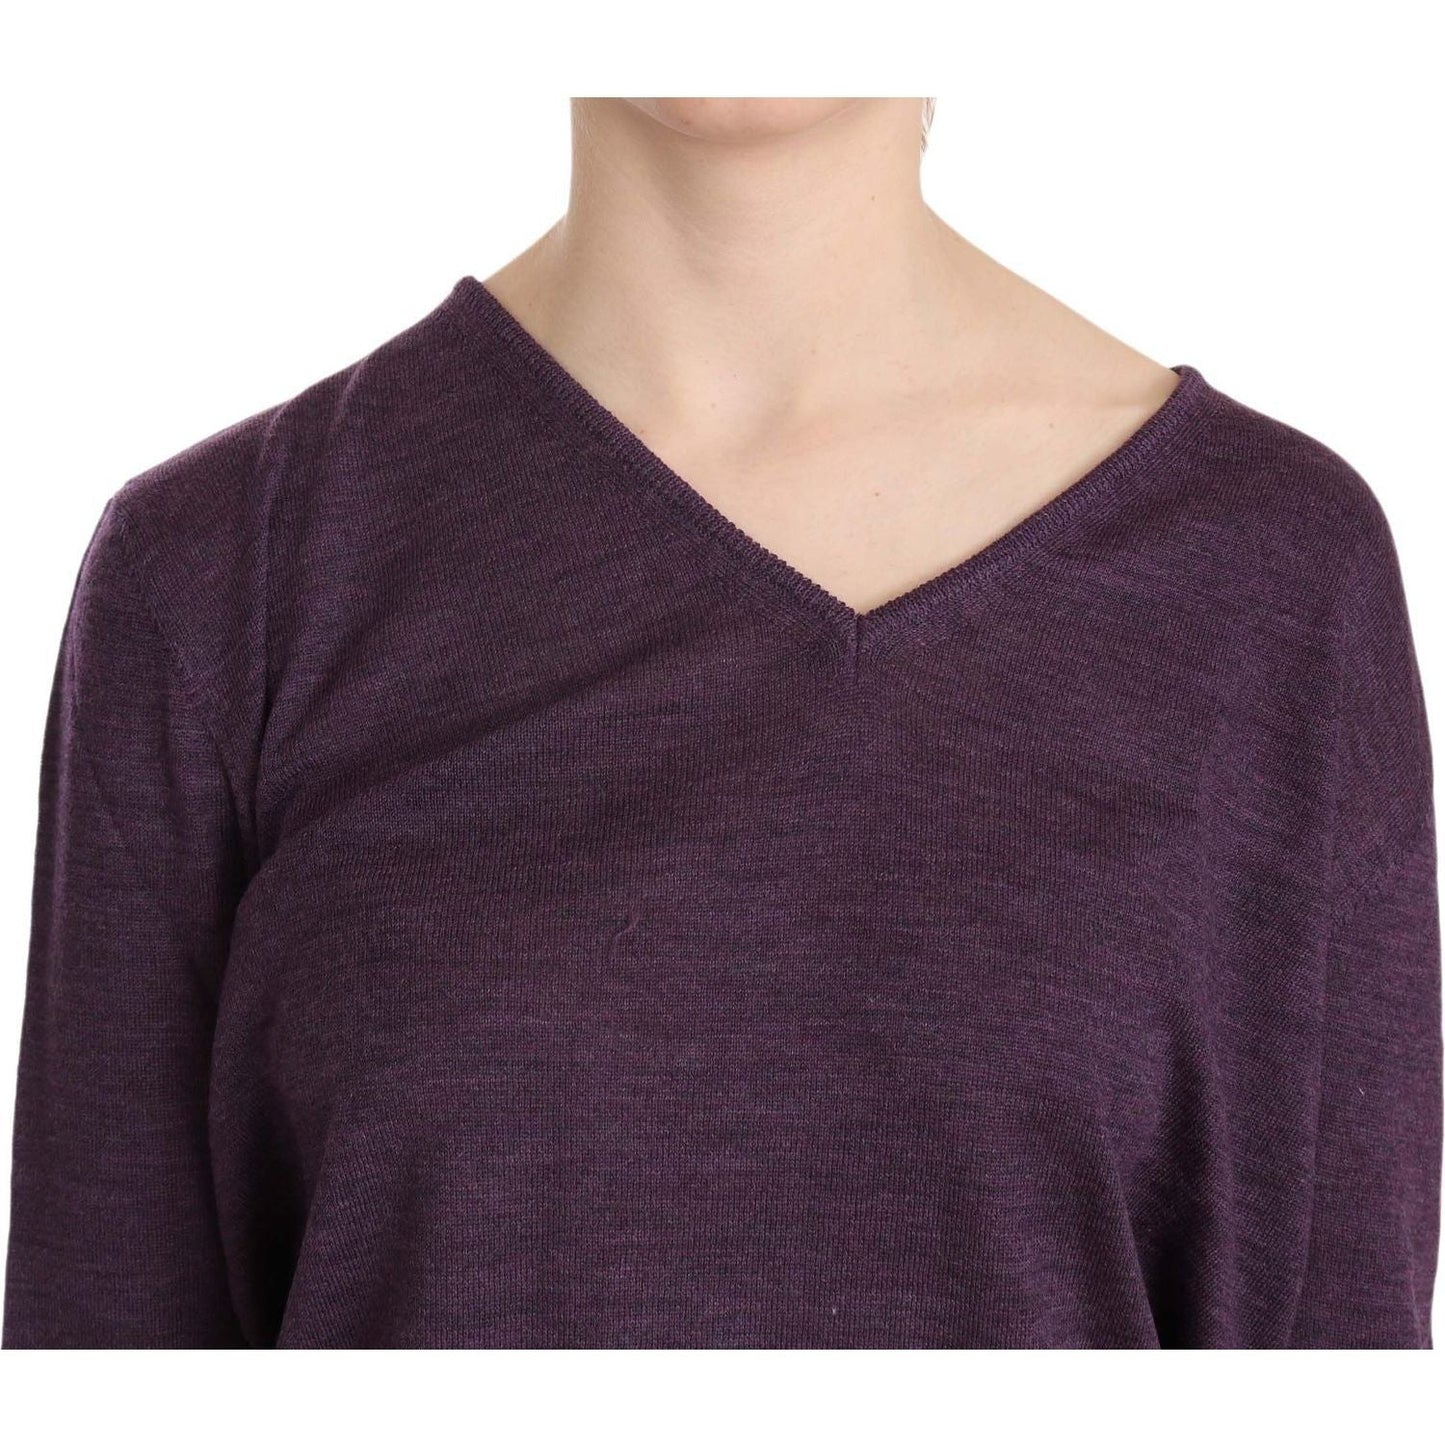 BYBLOS Elegant Purple V-Neck Wool Blouse purple-v-neck-long-sleeve-pullover-top